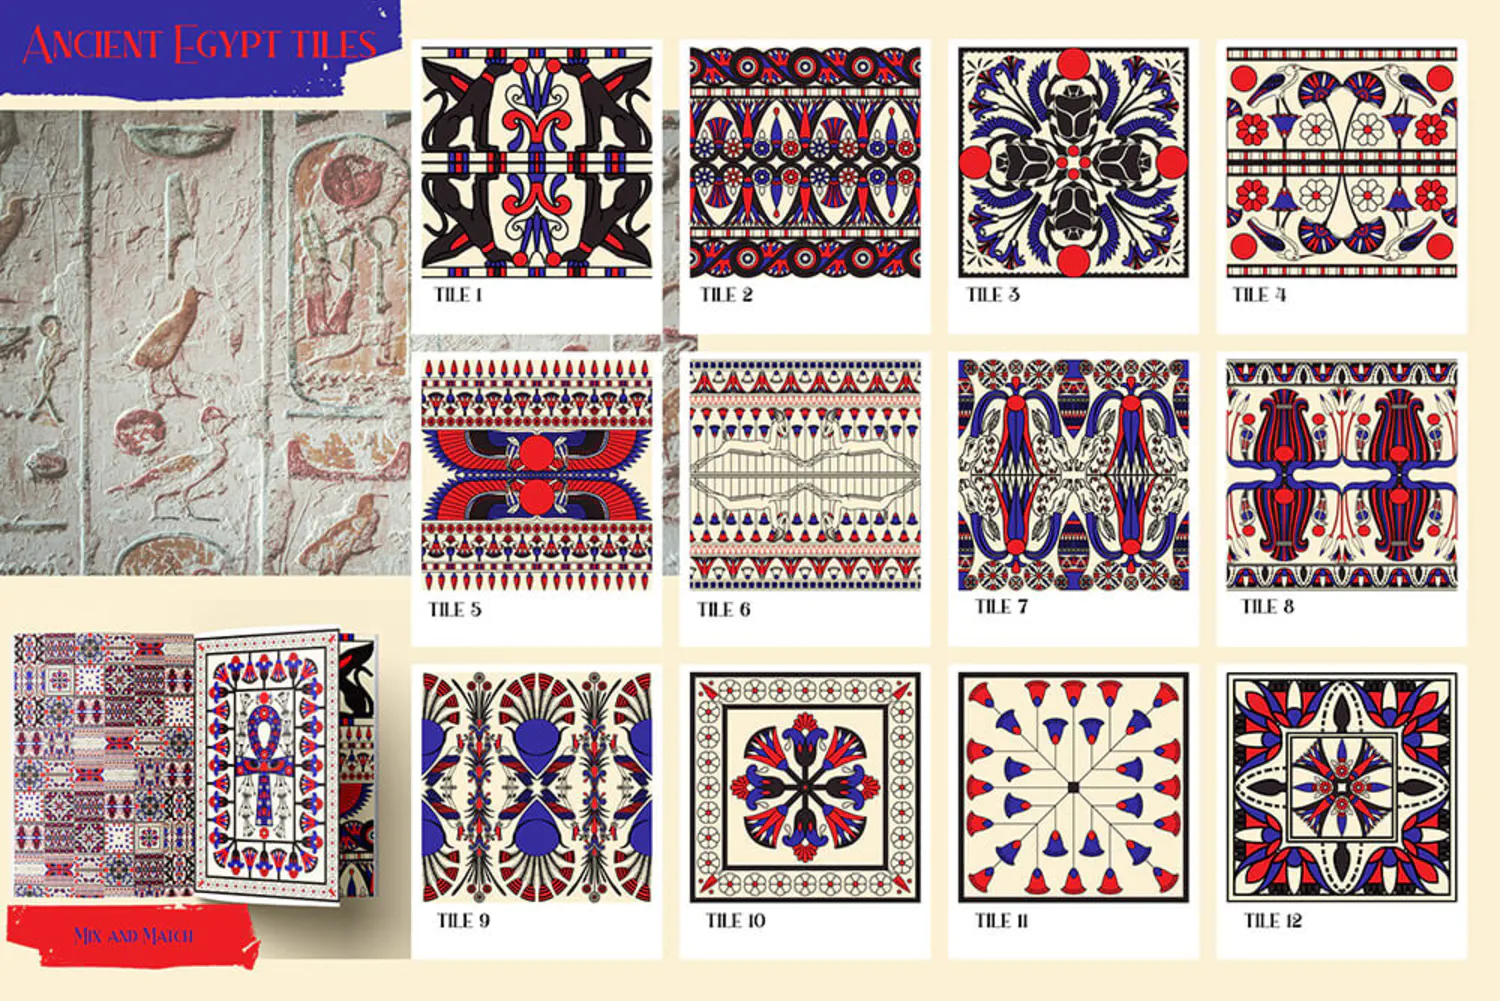 5541 创意古埃及艺术收藏插画图案素材